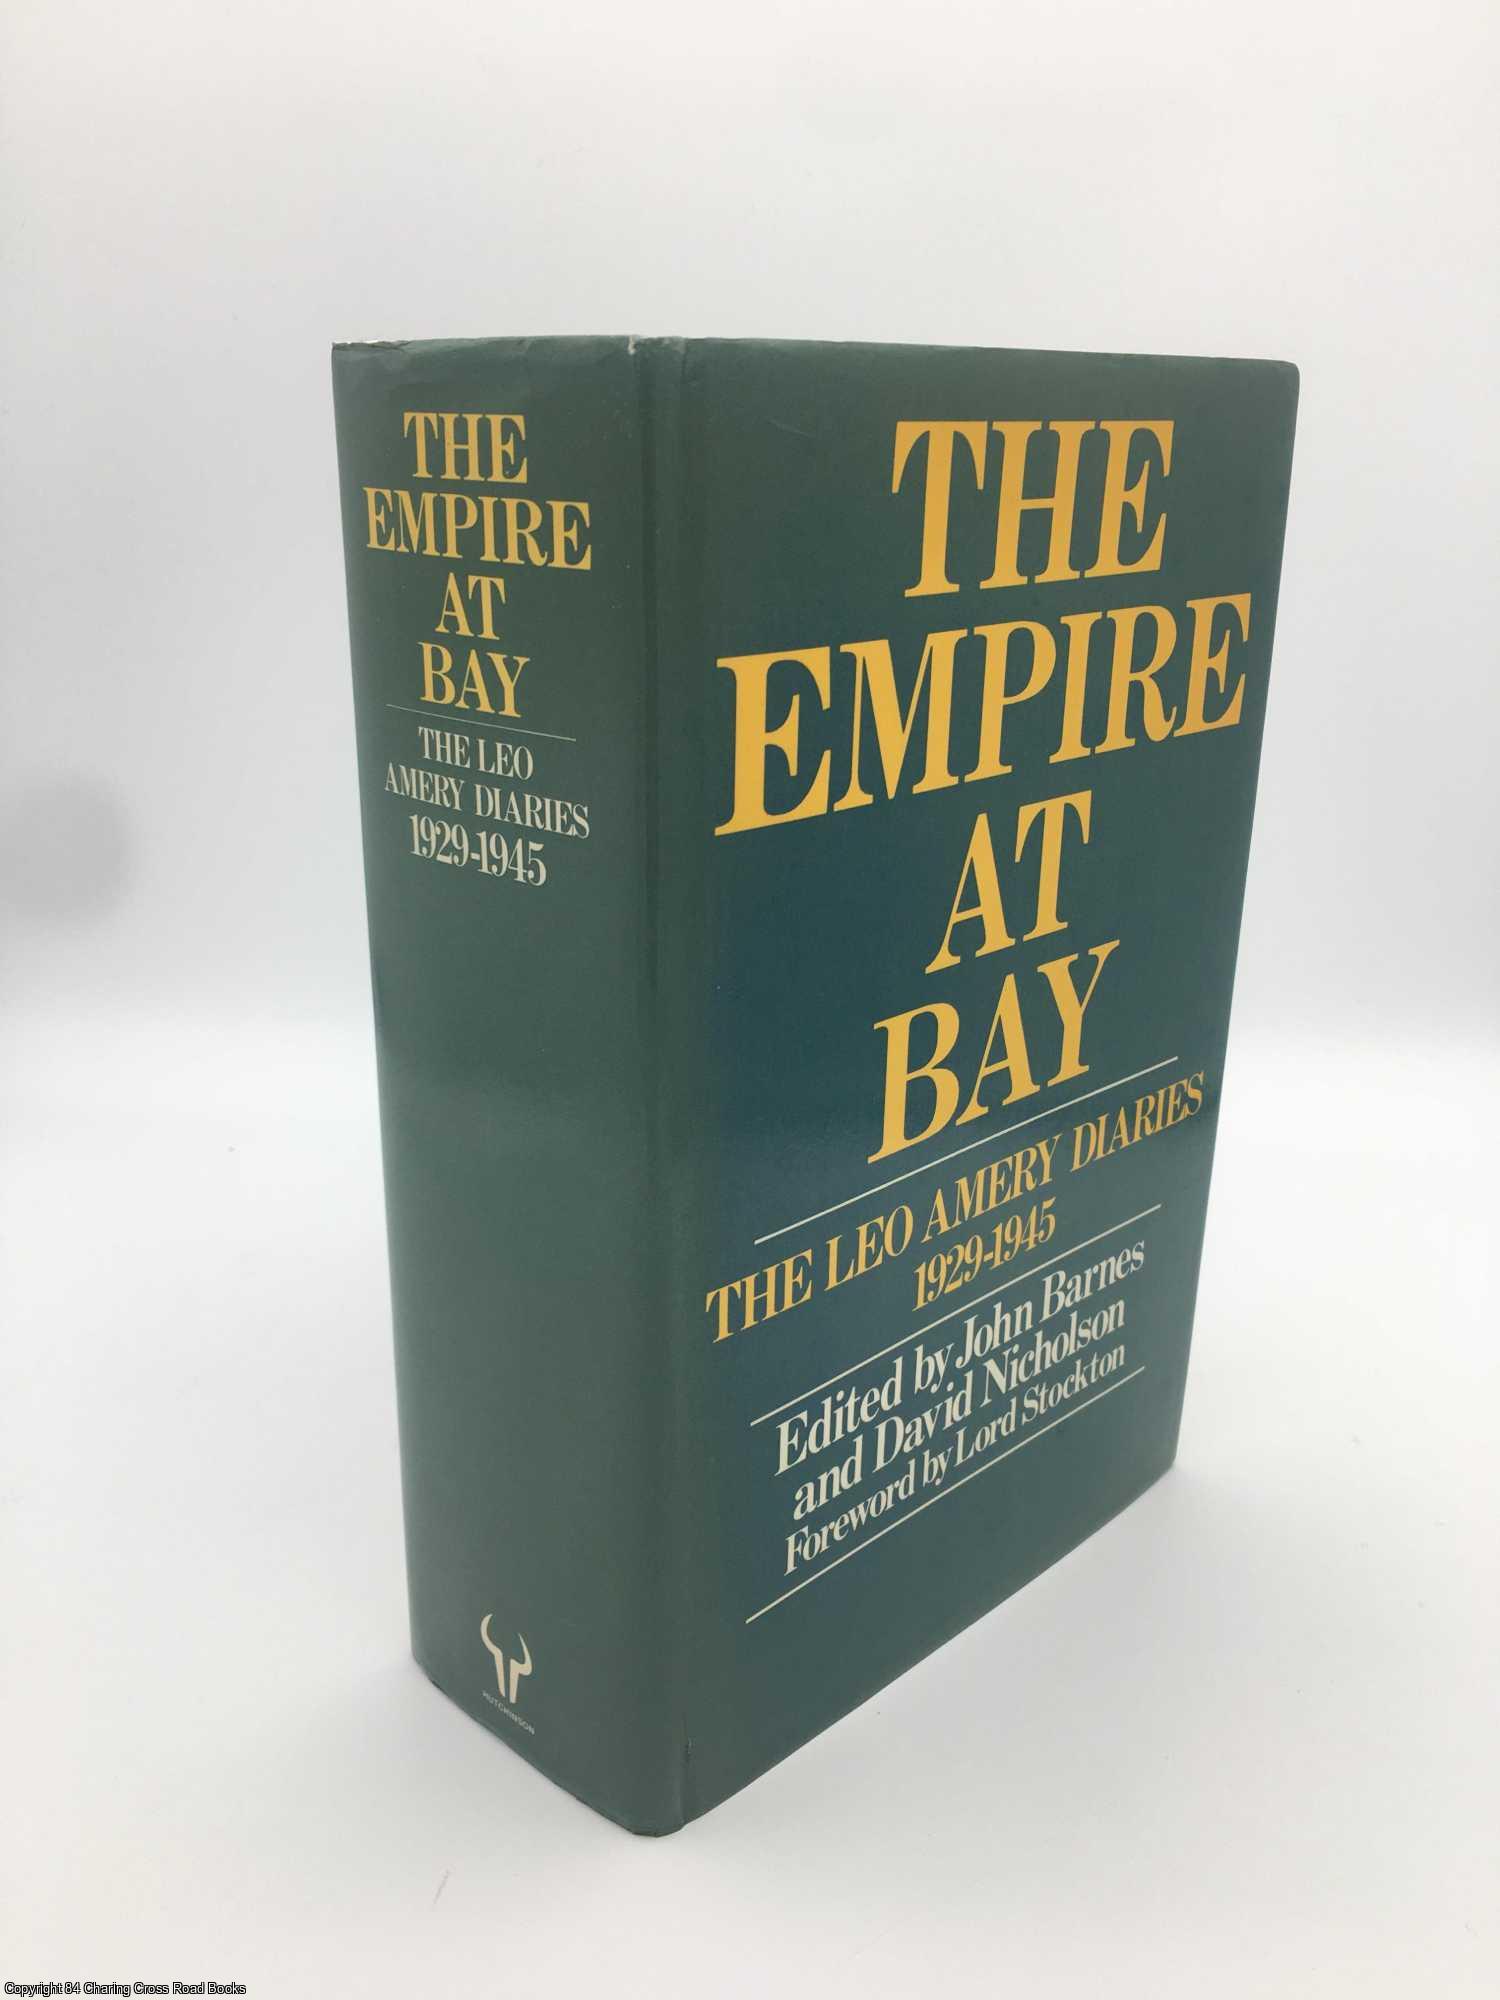 Amery, Leo; Barnes; Stockton - The Empire at Bay: the Leo Amery diaries